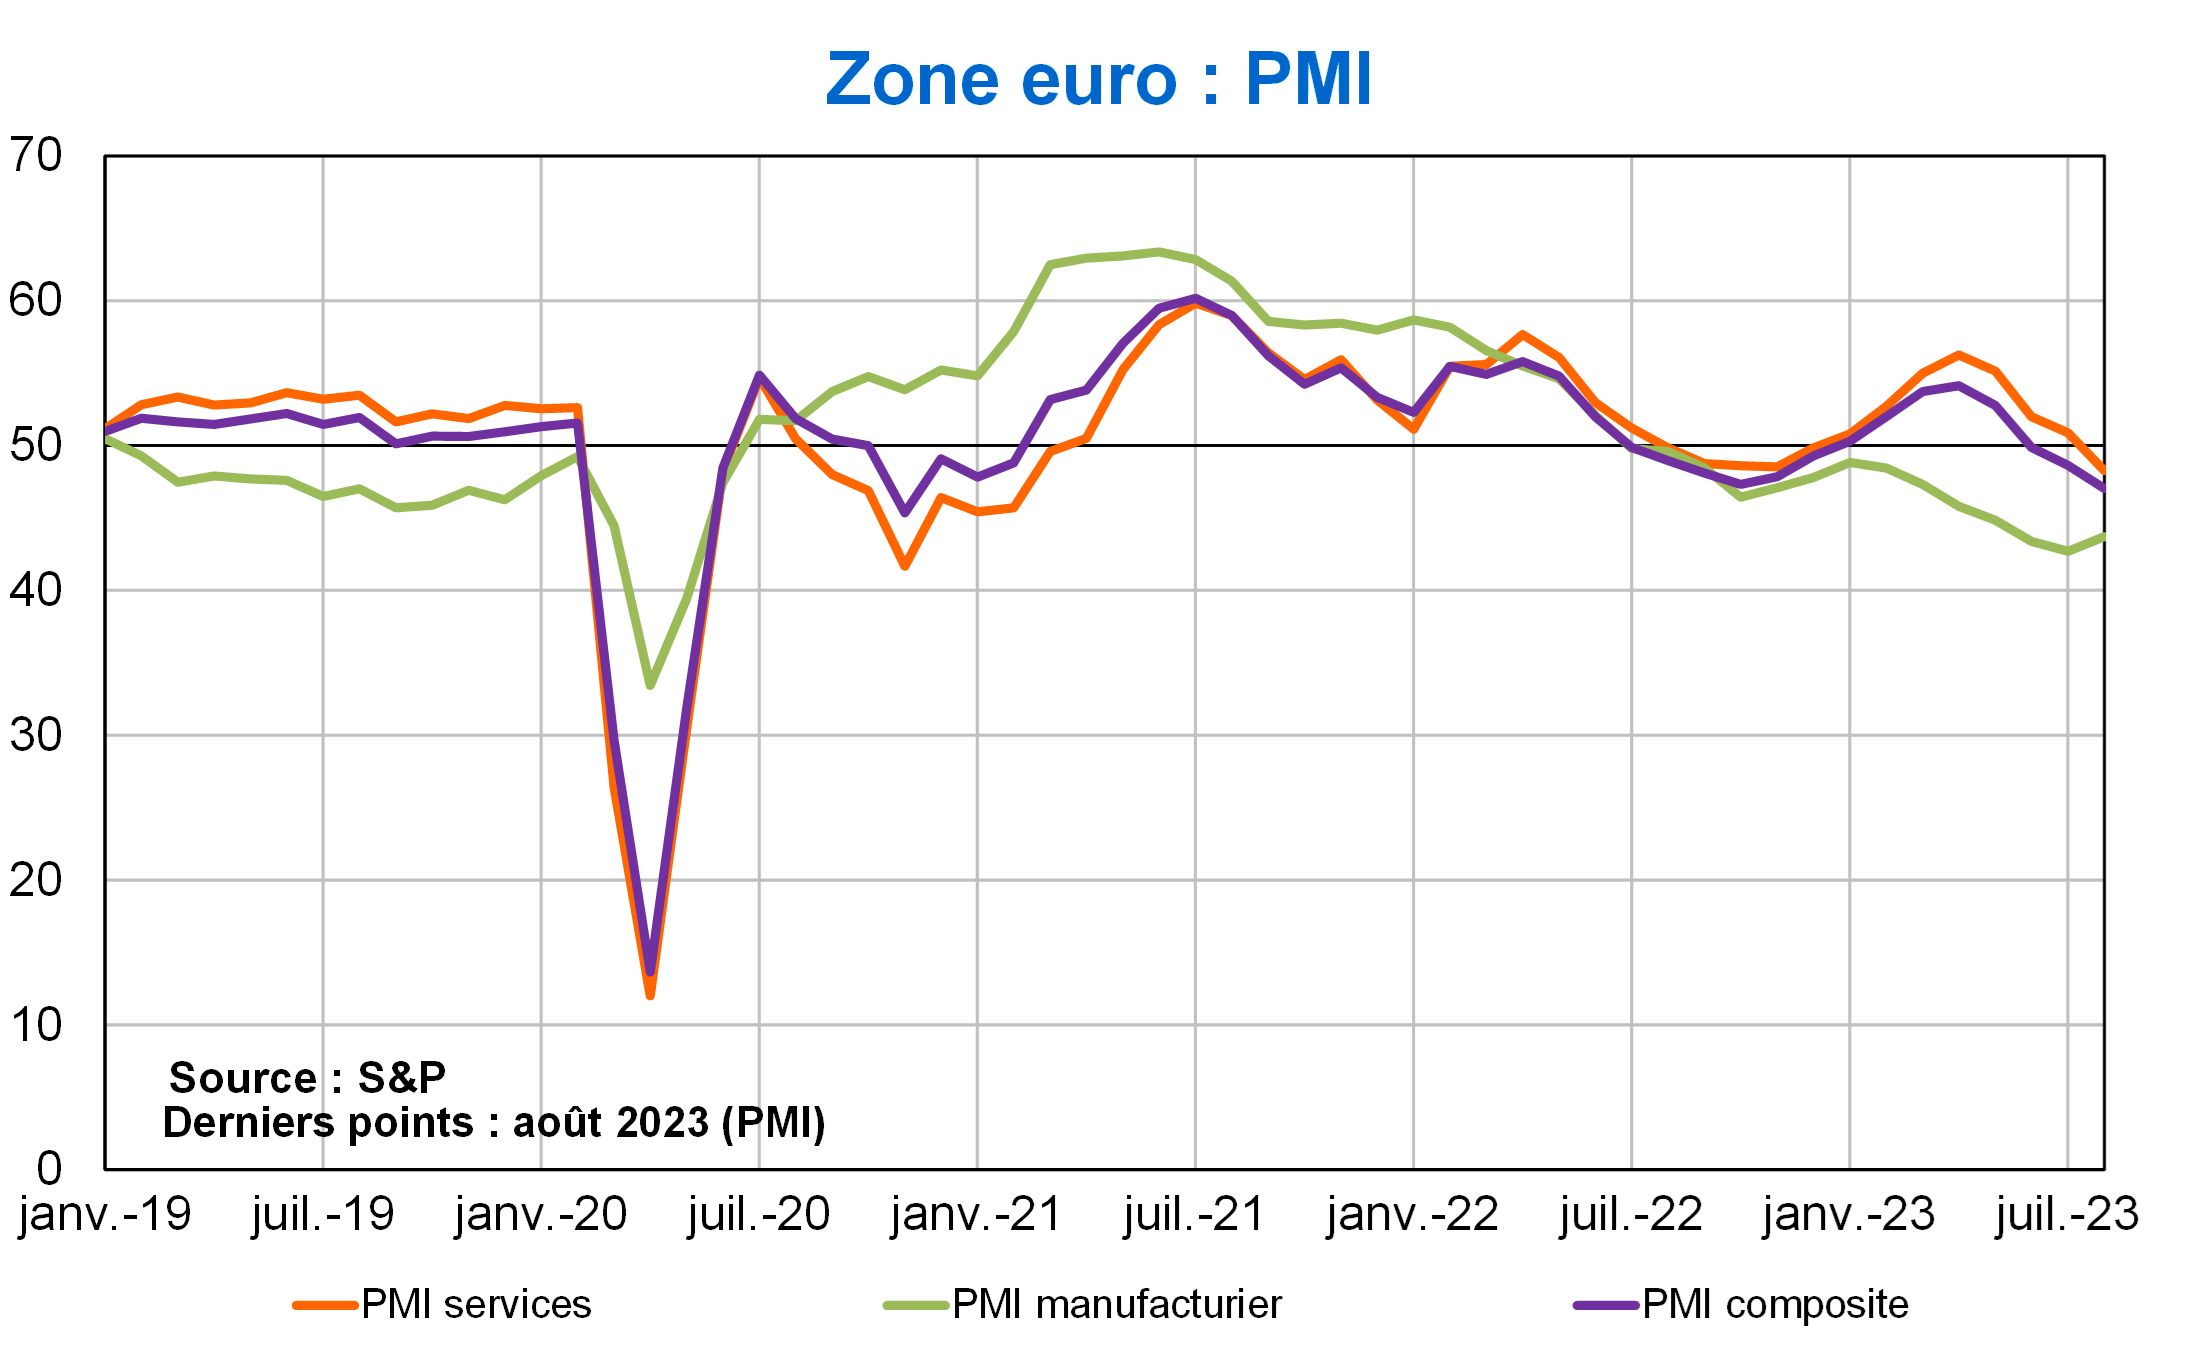 Zone euro PMI